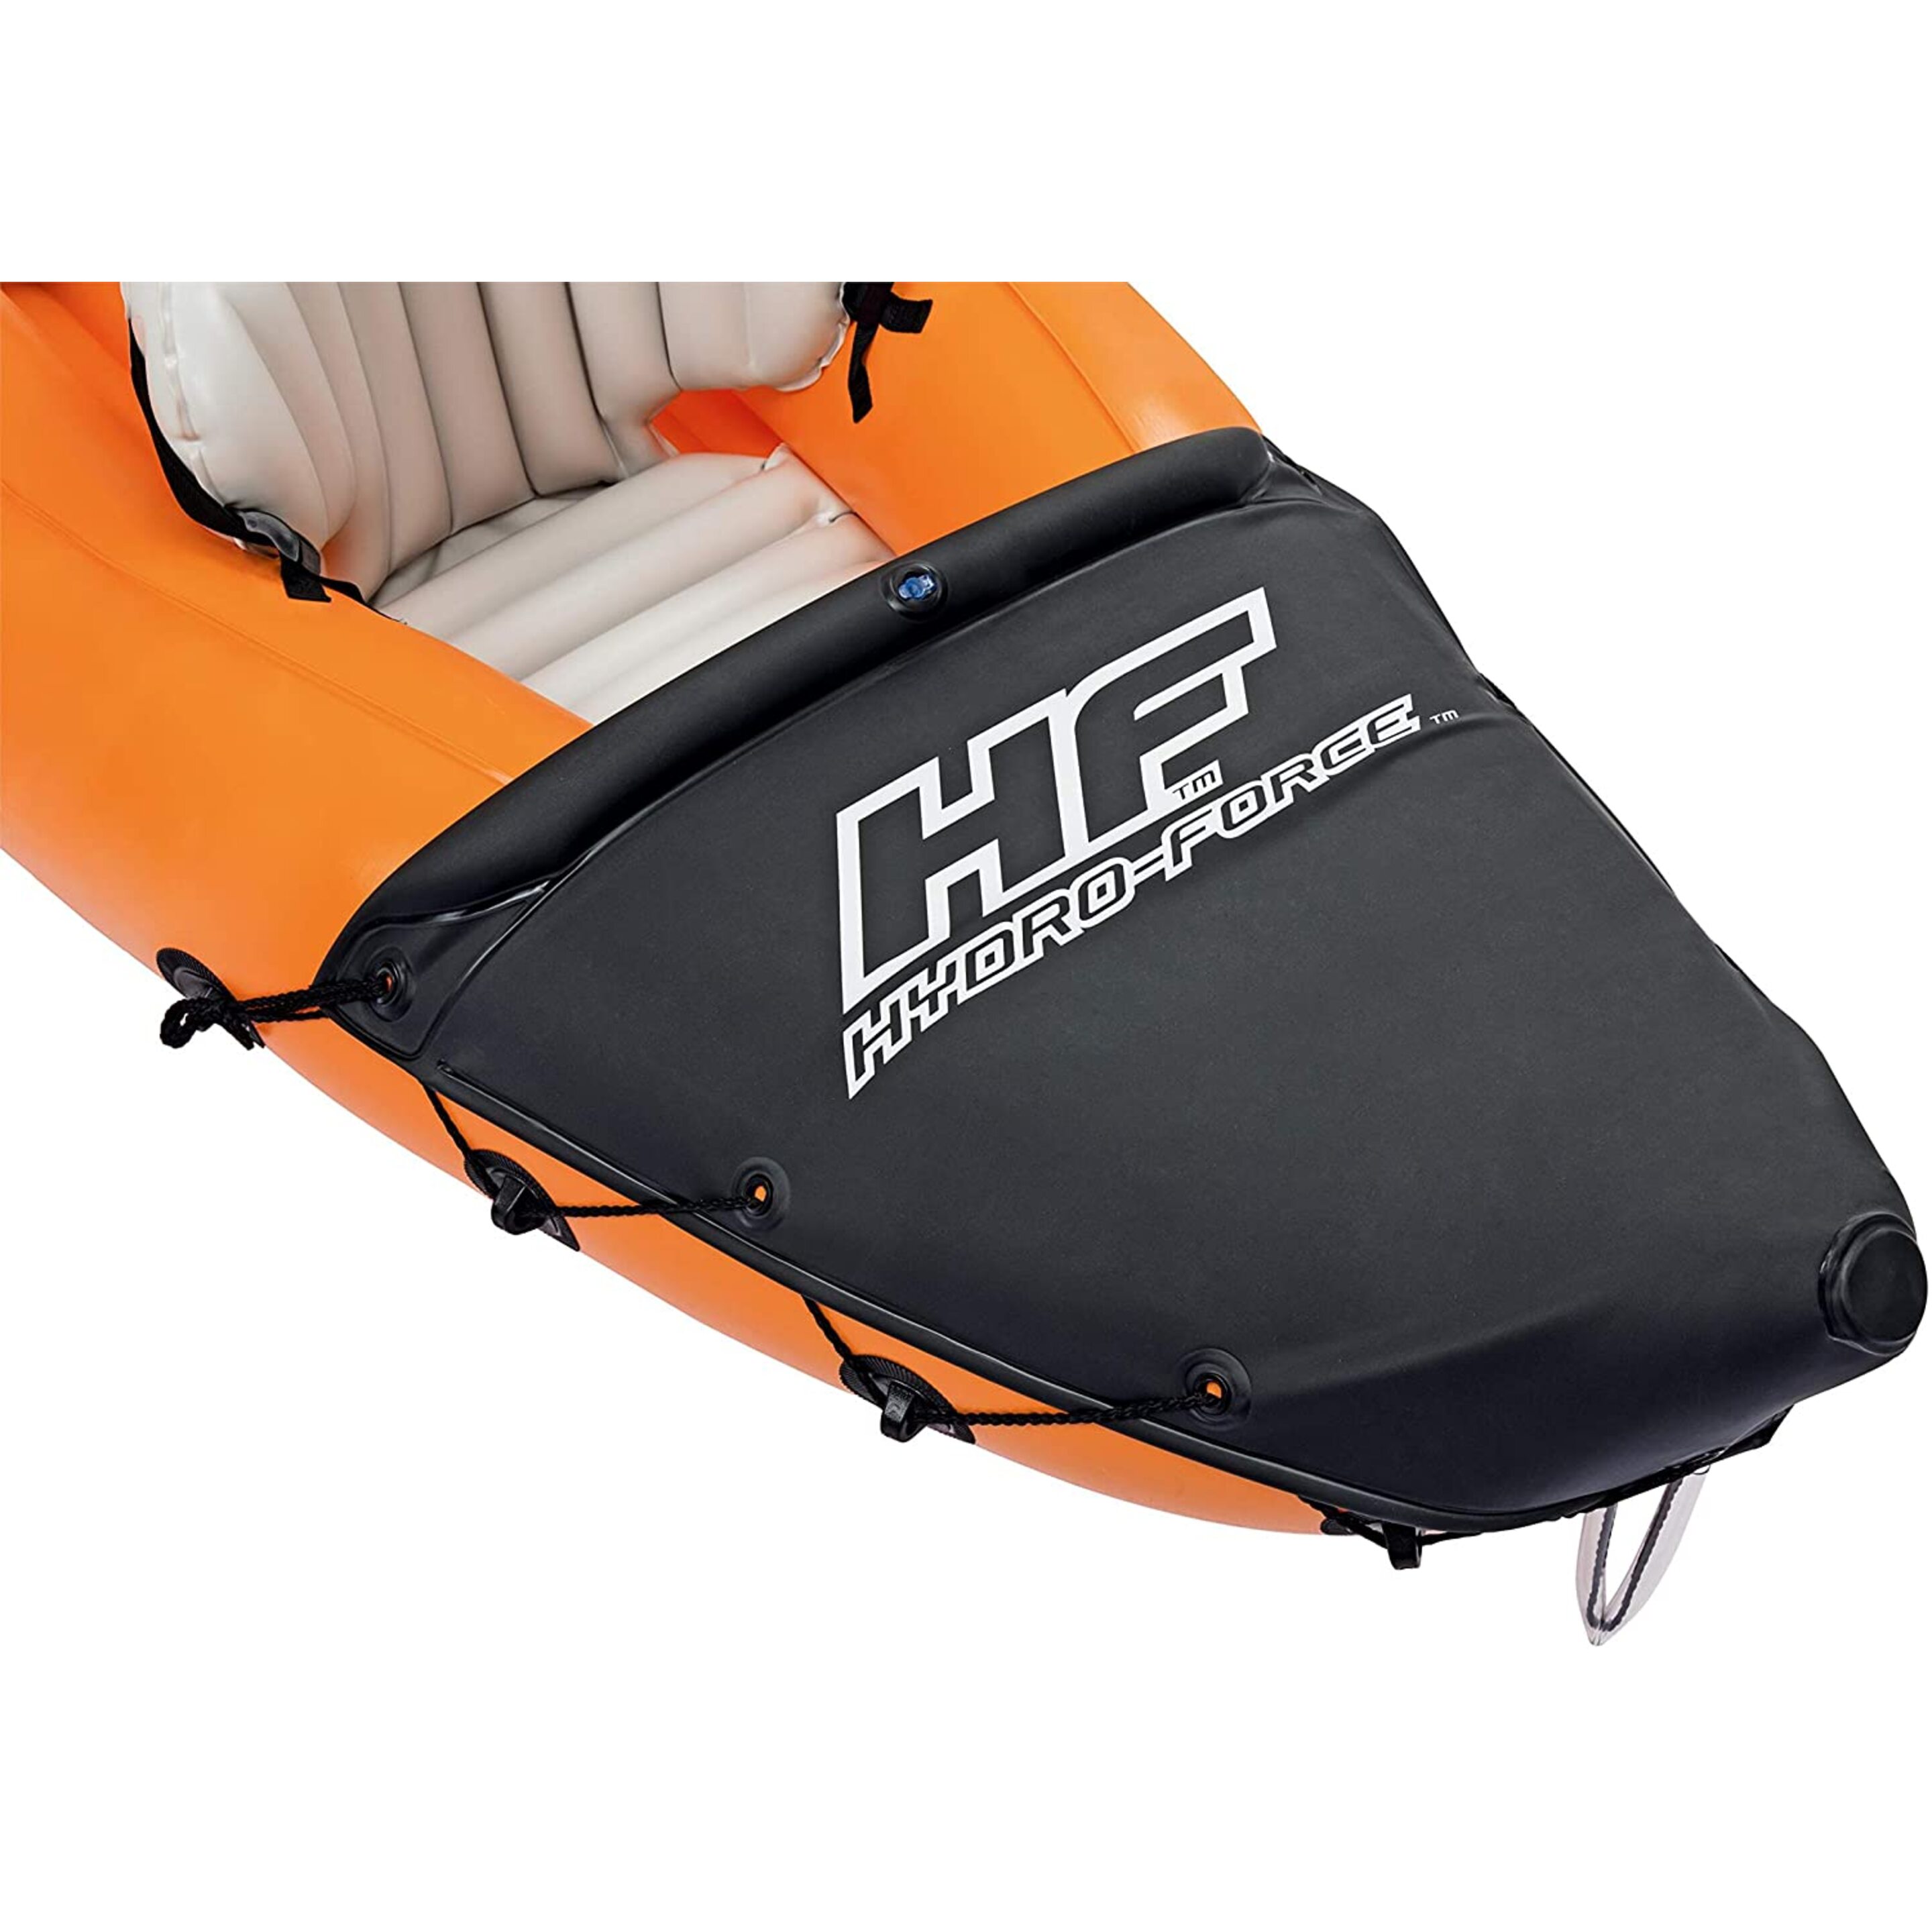 Bestway Kayak Hinchable Hydro Force Lite-rapid